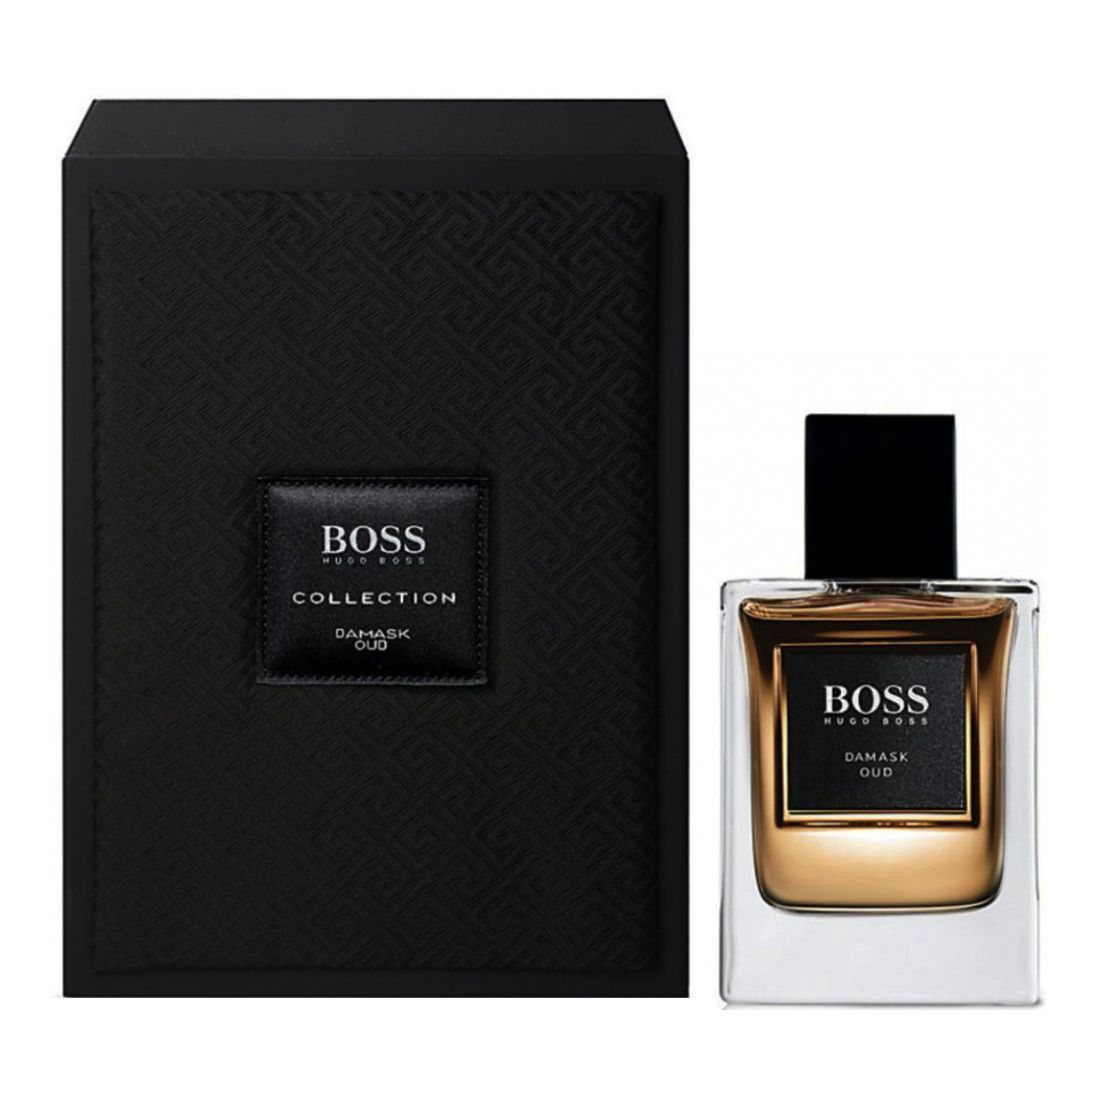 Hugo Boss Damask Oud Perfume - 50ml 